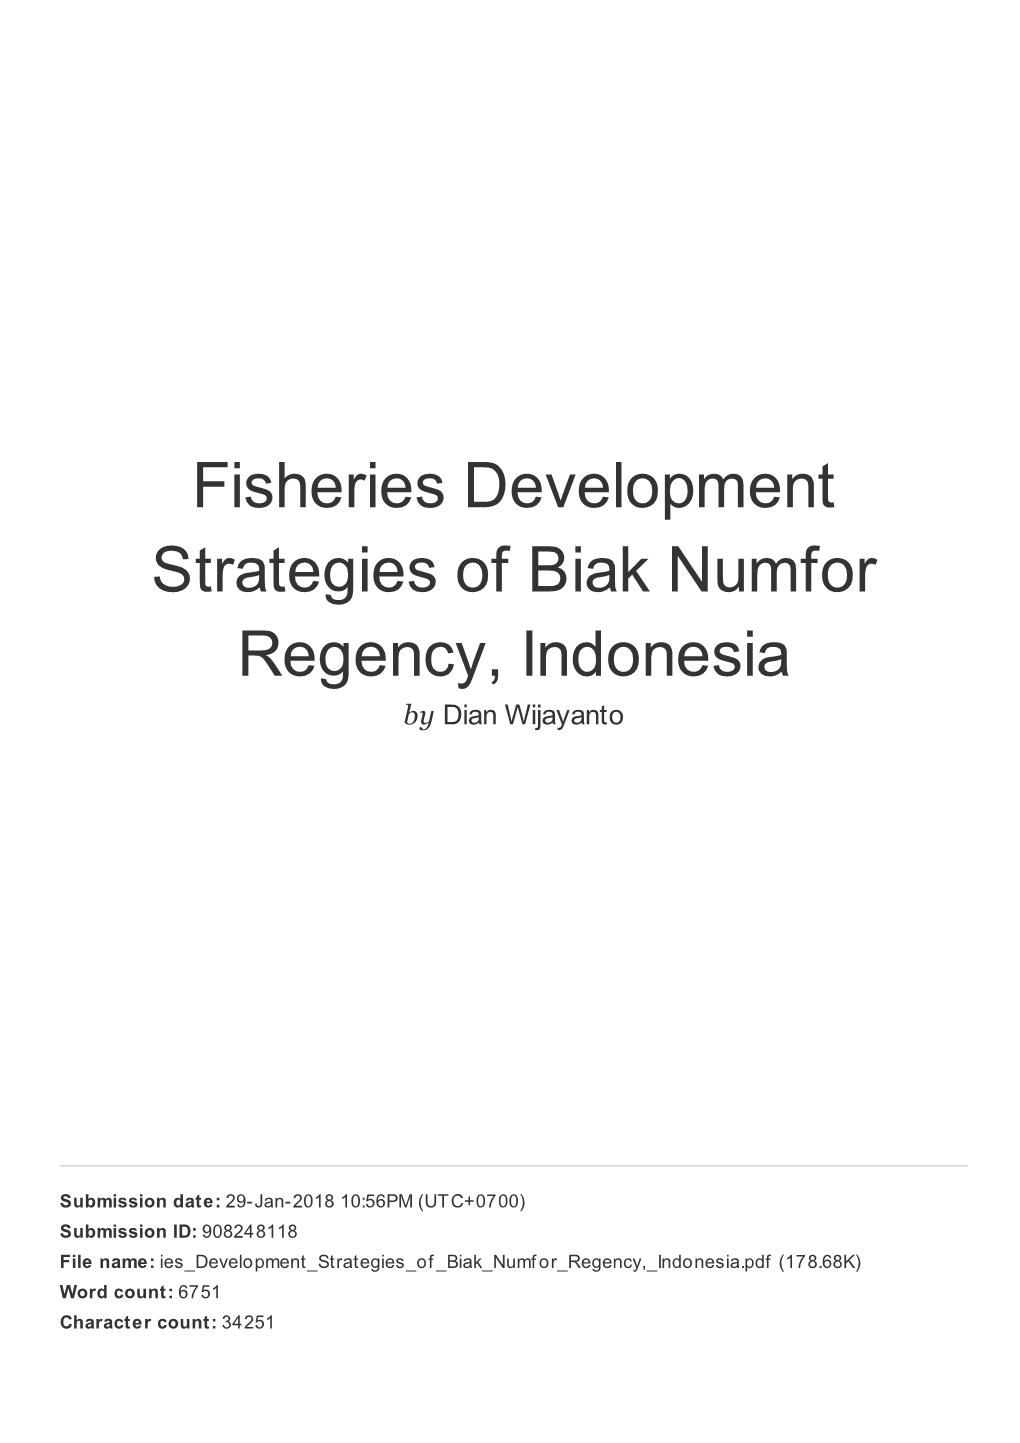 Fisheries Development Strategies of Biak Numfor Regency, Indonesia by Dian Wijayanto